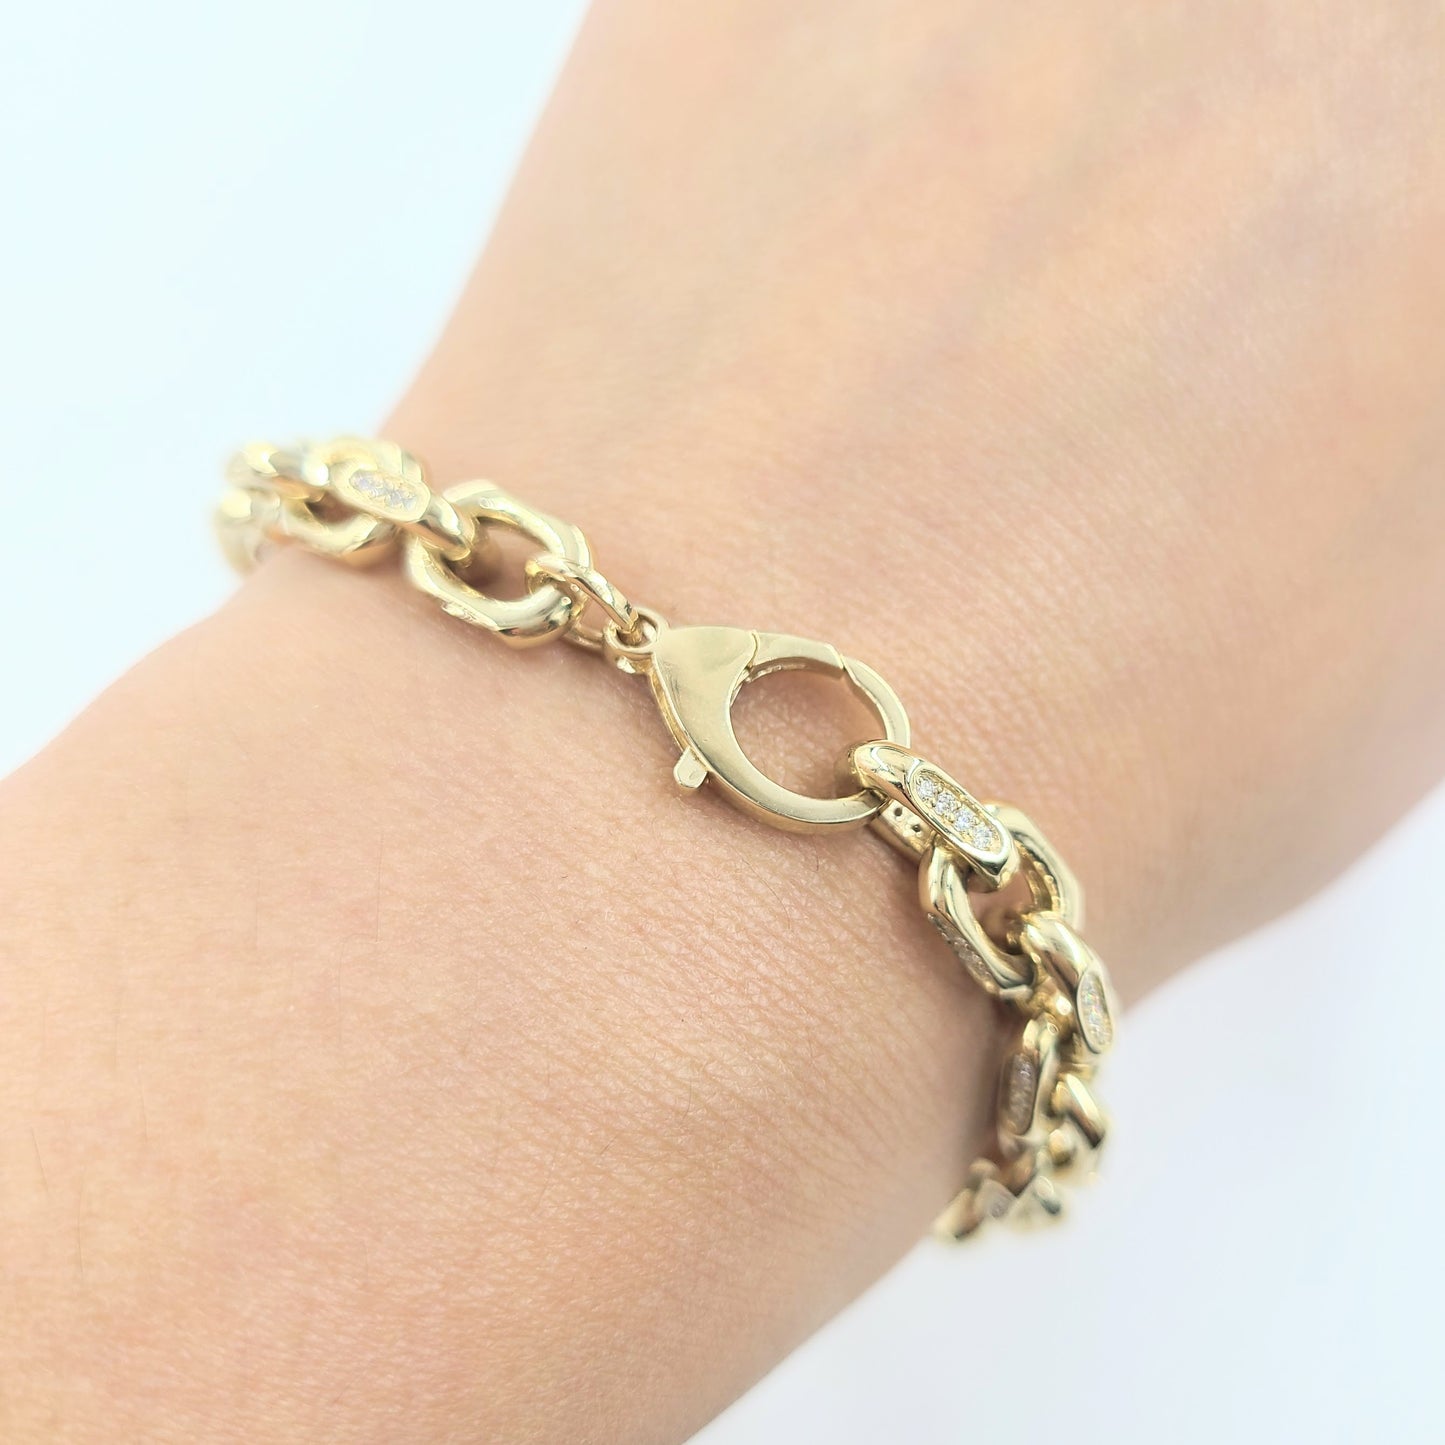 Diamond Pave Gold Link Chain Bracelet